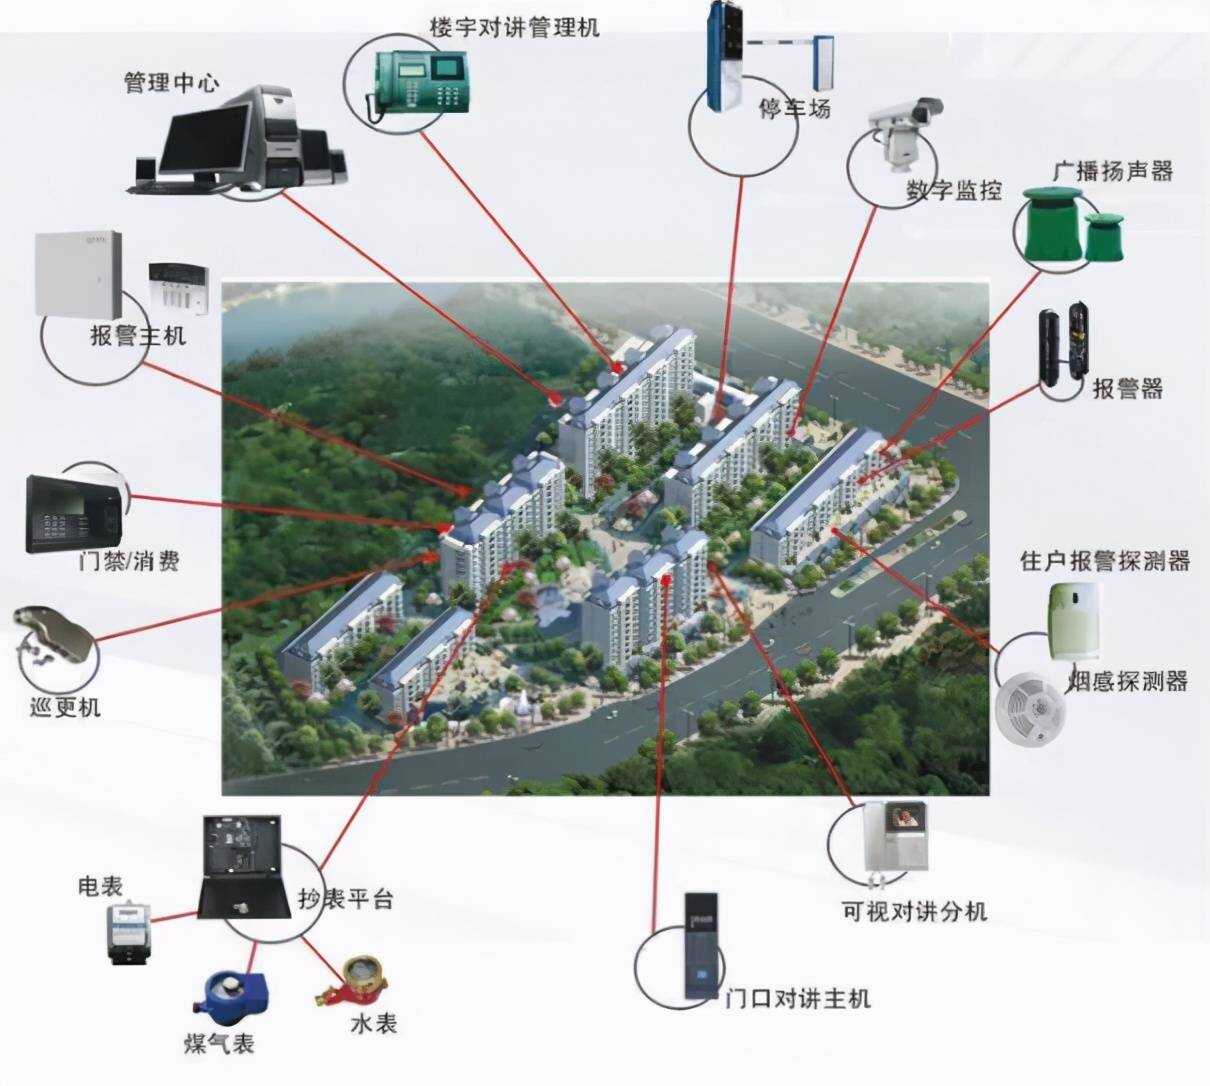 中国广告市场 万亿规模_楼宇自控市场规模_多大规模的楼宇会使用楼宇自控系统